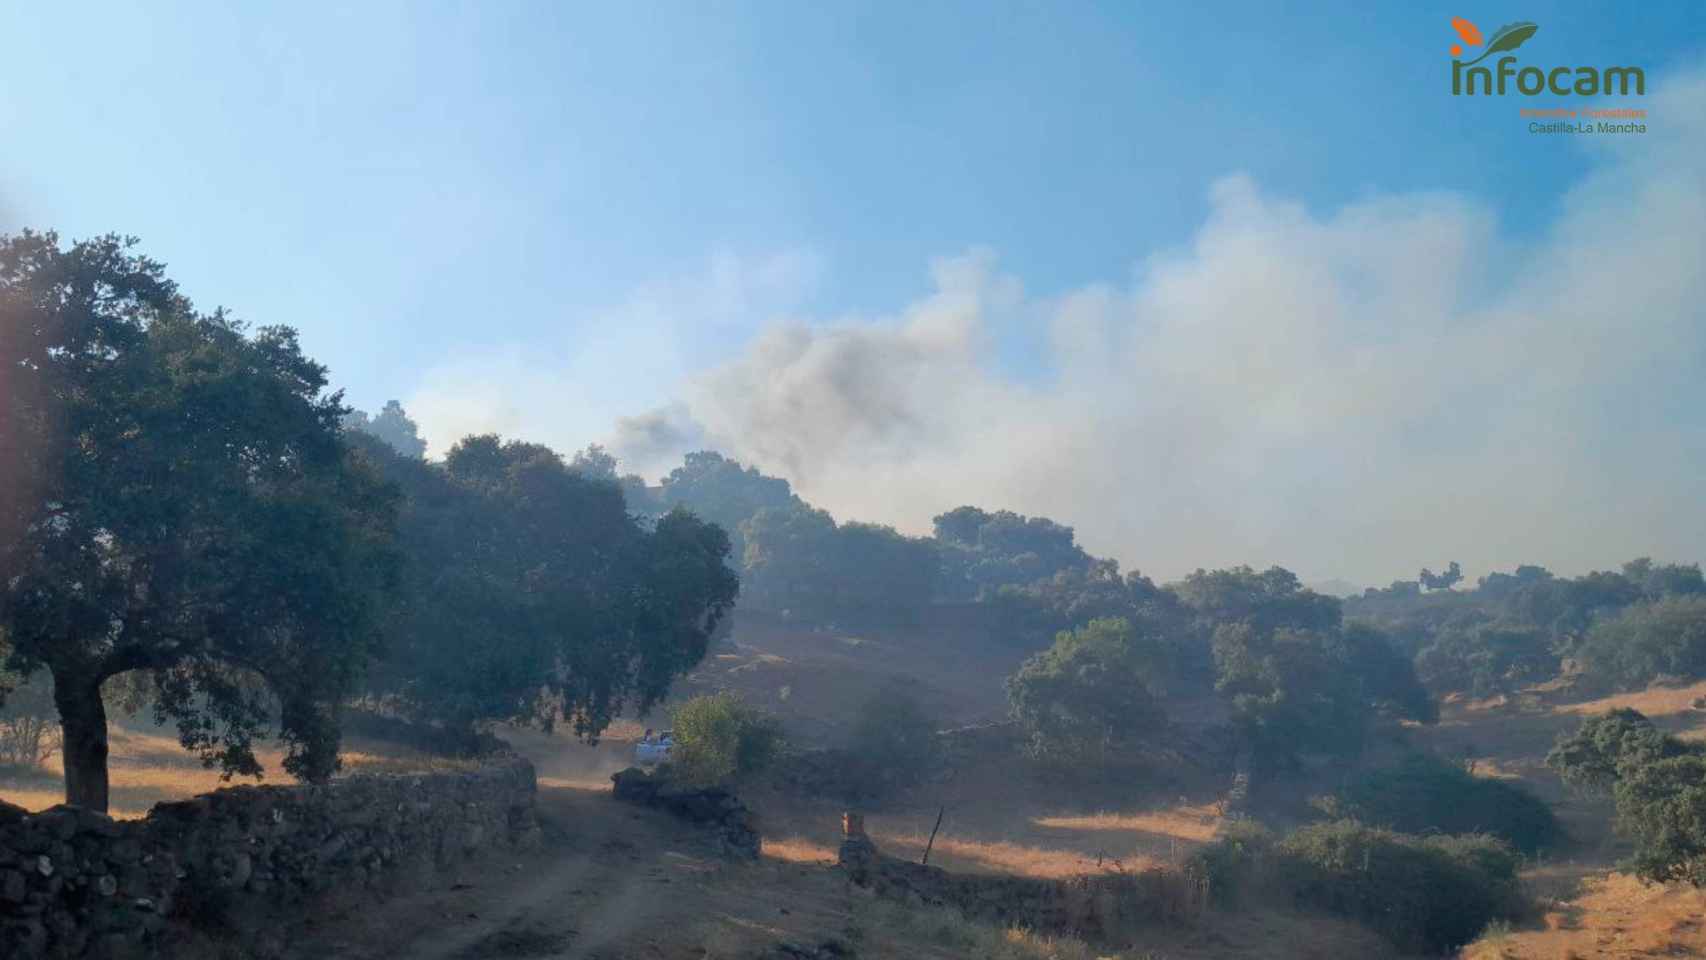 Incendio forestal en Castillo de Bayuela (Toledo). Foto: Plan INFOCAM.